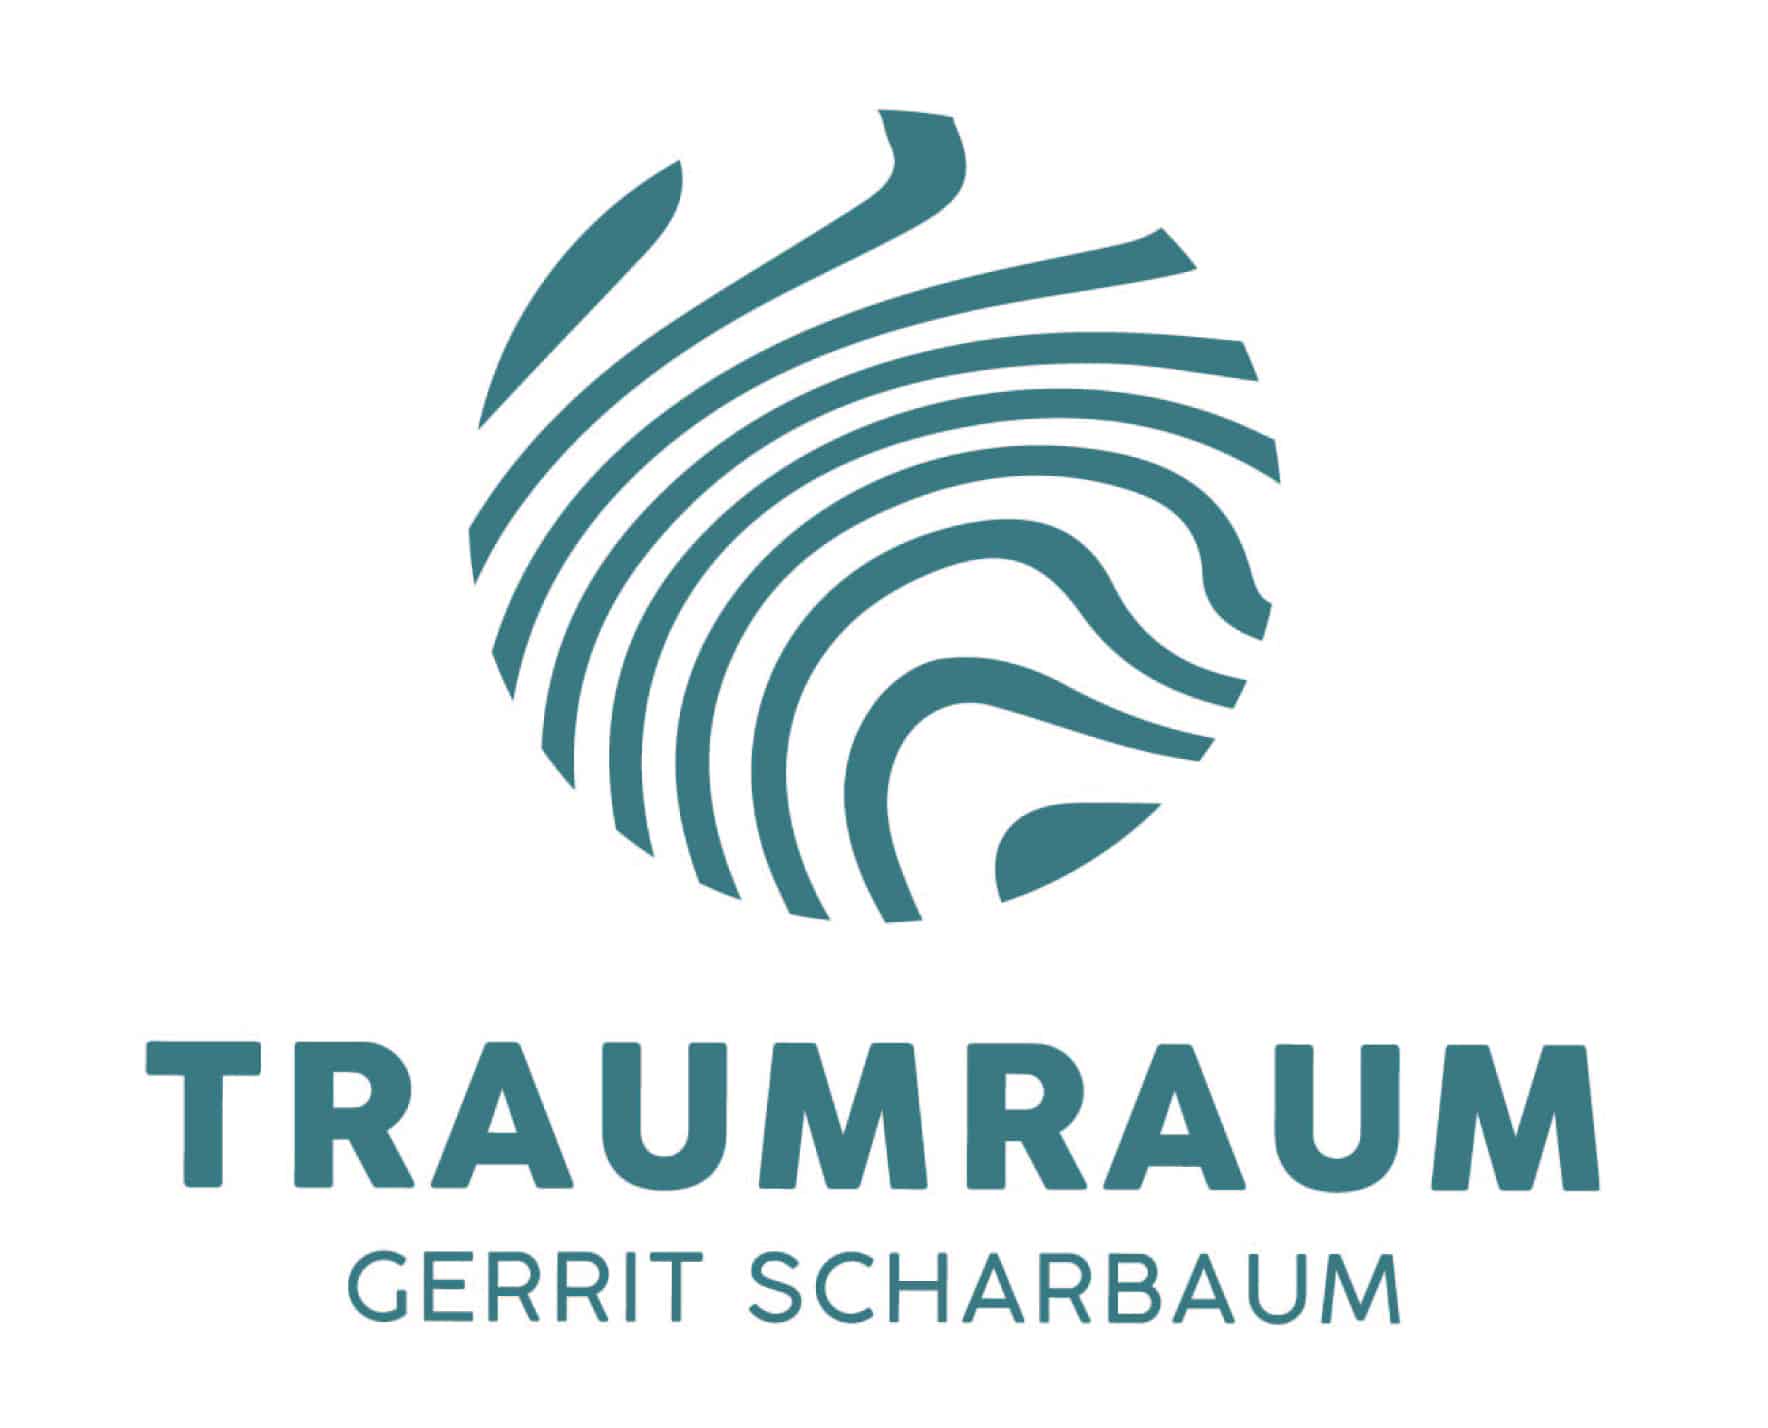 TRAUMRAUM Gerrit Scharbaum - Marken-Design